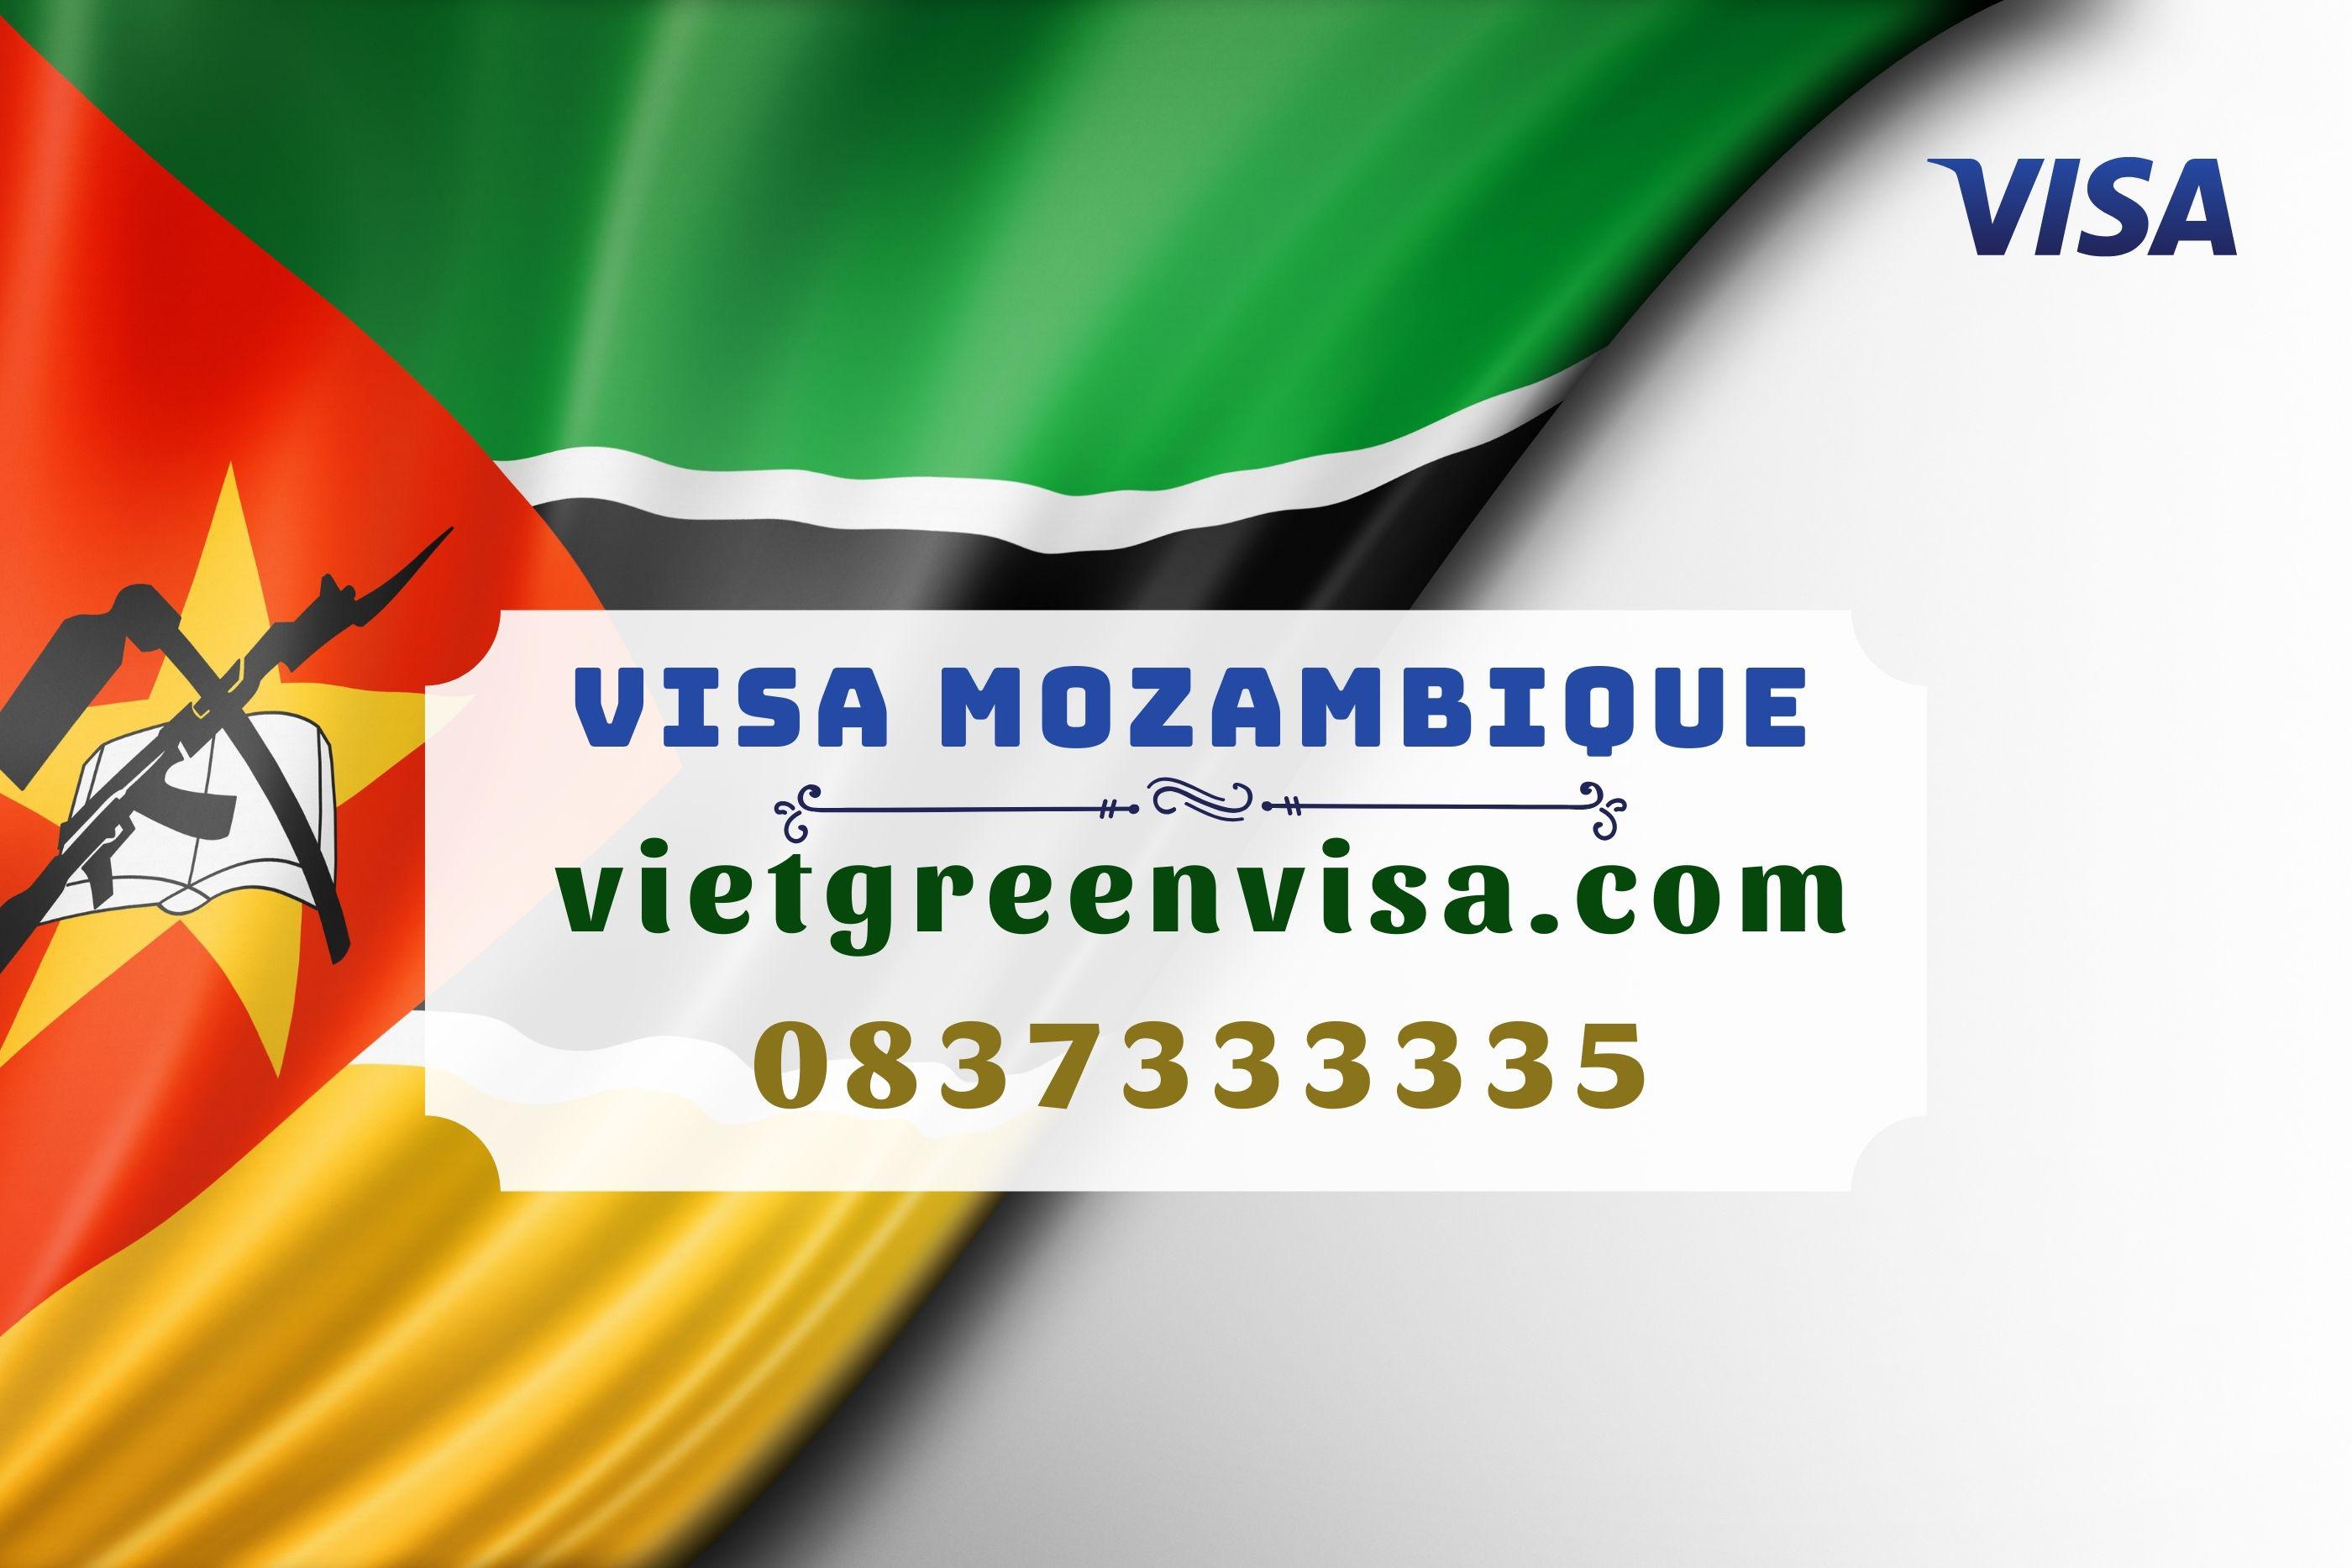 Mách bạn các bước xin visa Mozambique cực kỳ hiệu quả